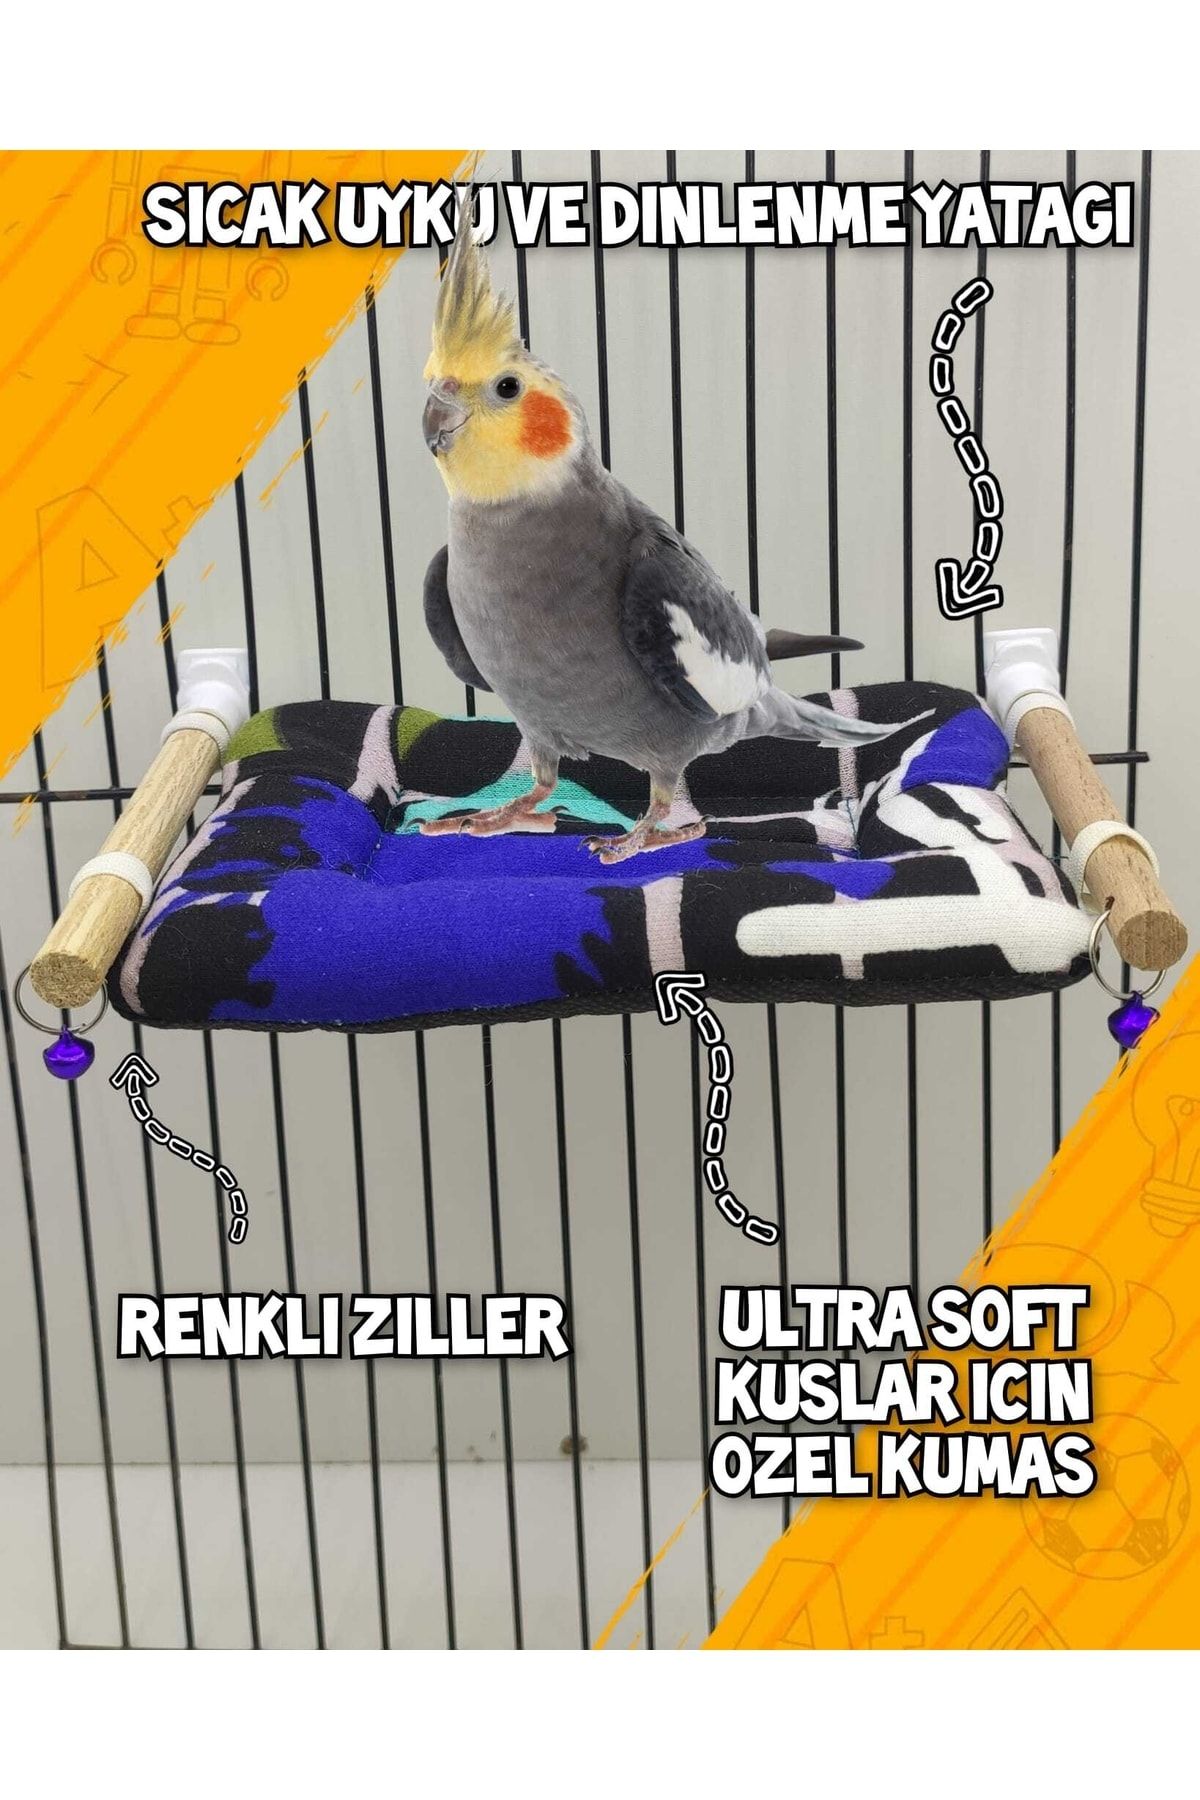 ozzipetshop Sultan Papaganı Sıcak Uyku Ve Dinlenme Tünekli Yastık + Süpriz Hediye